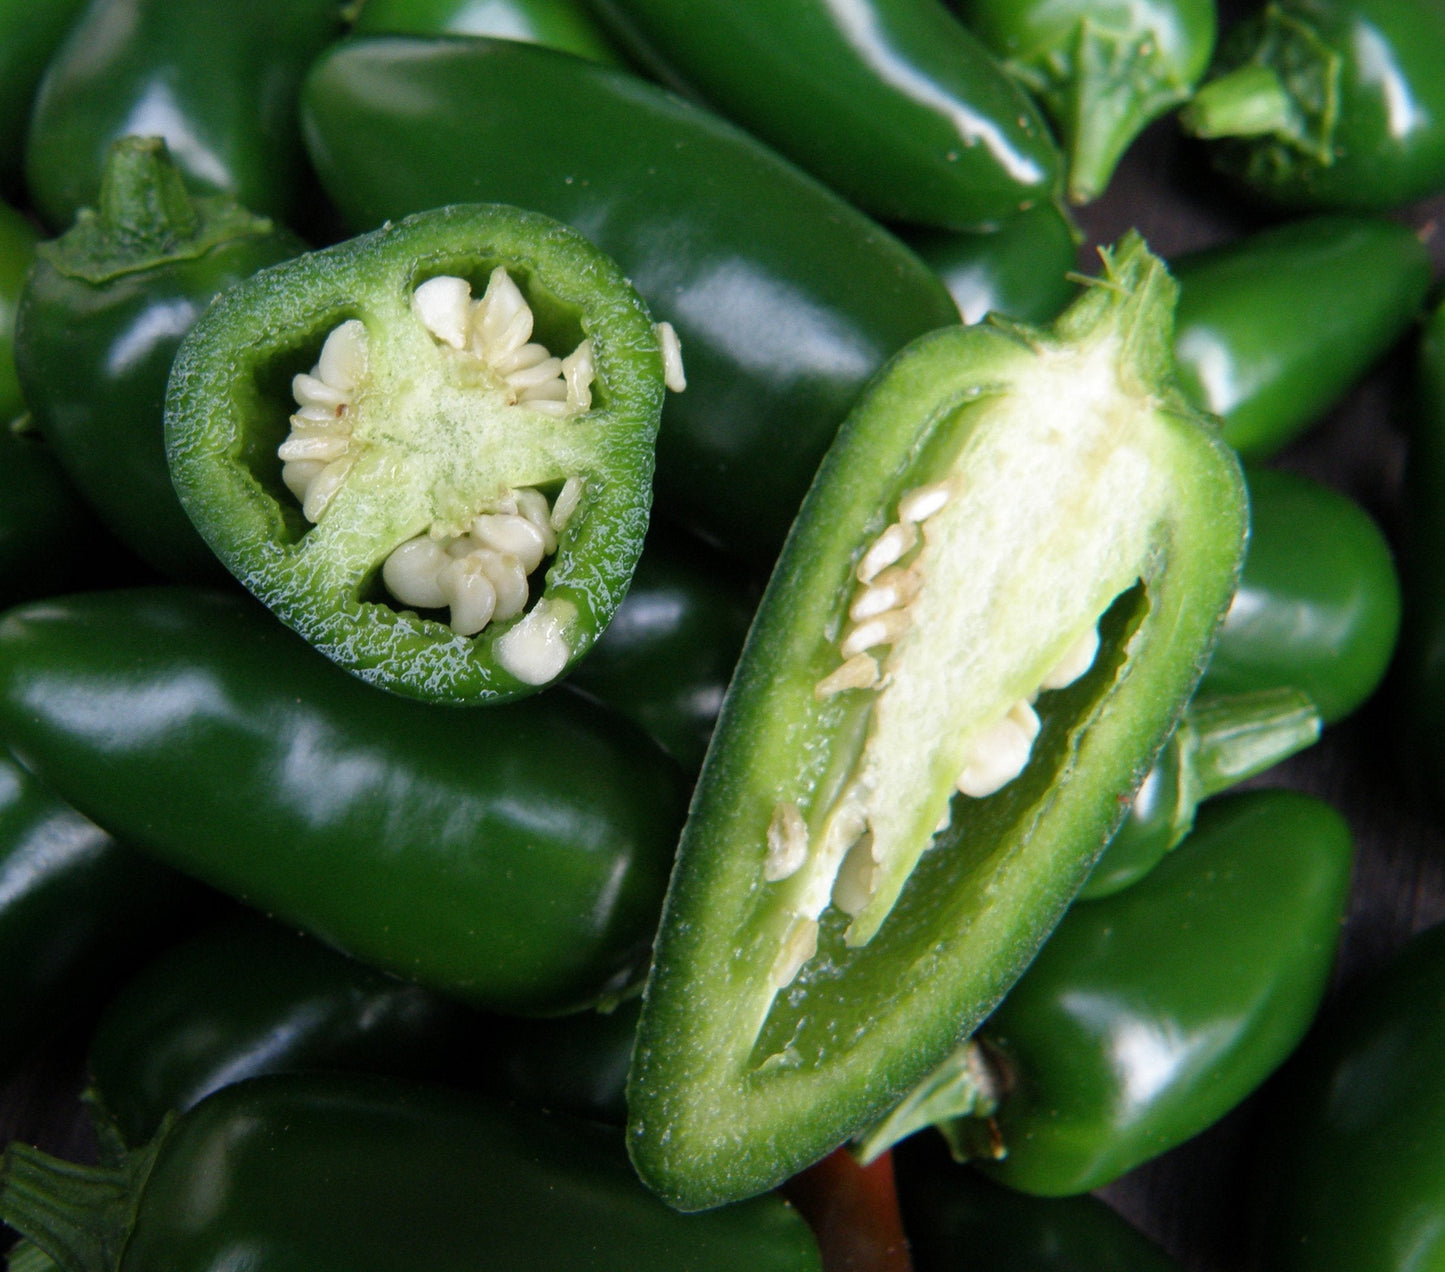 Organic BIO Jalapeno pepper growing set. All included. Non-GMO Vesta Market